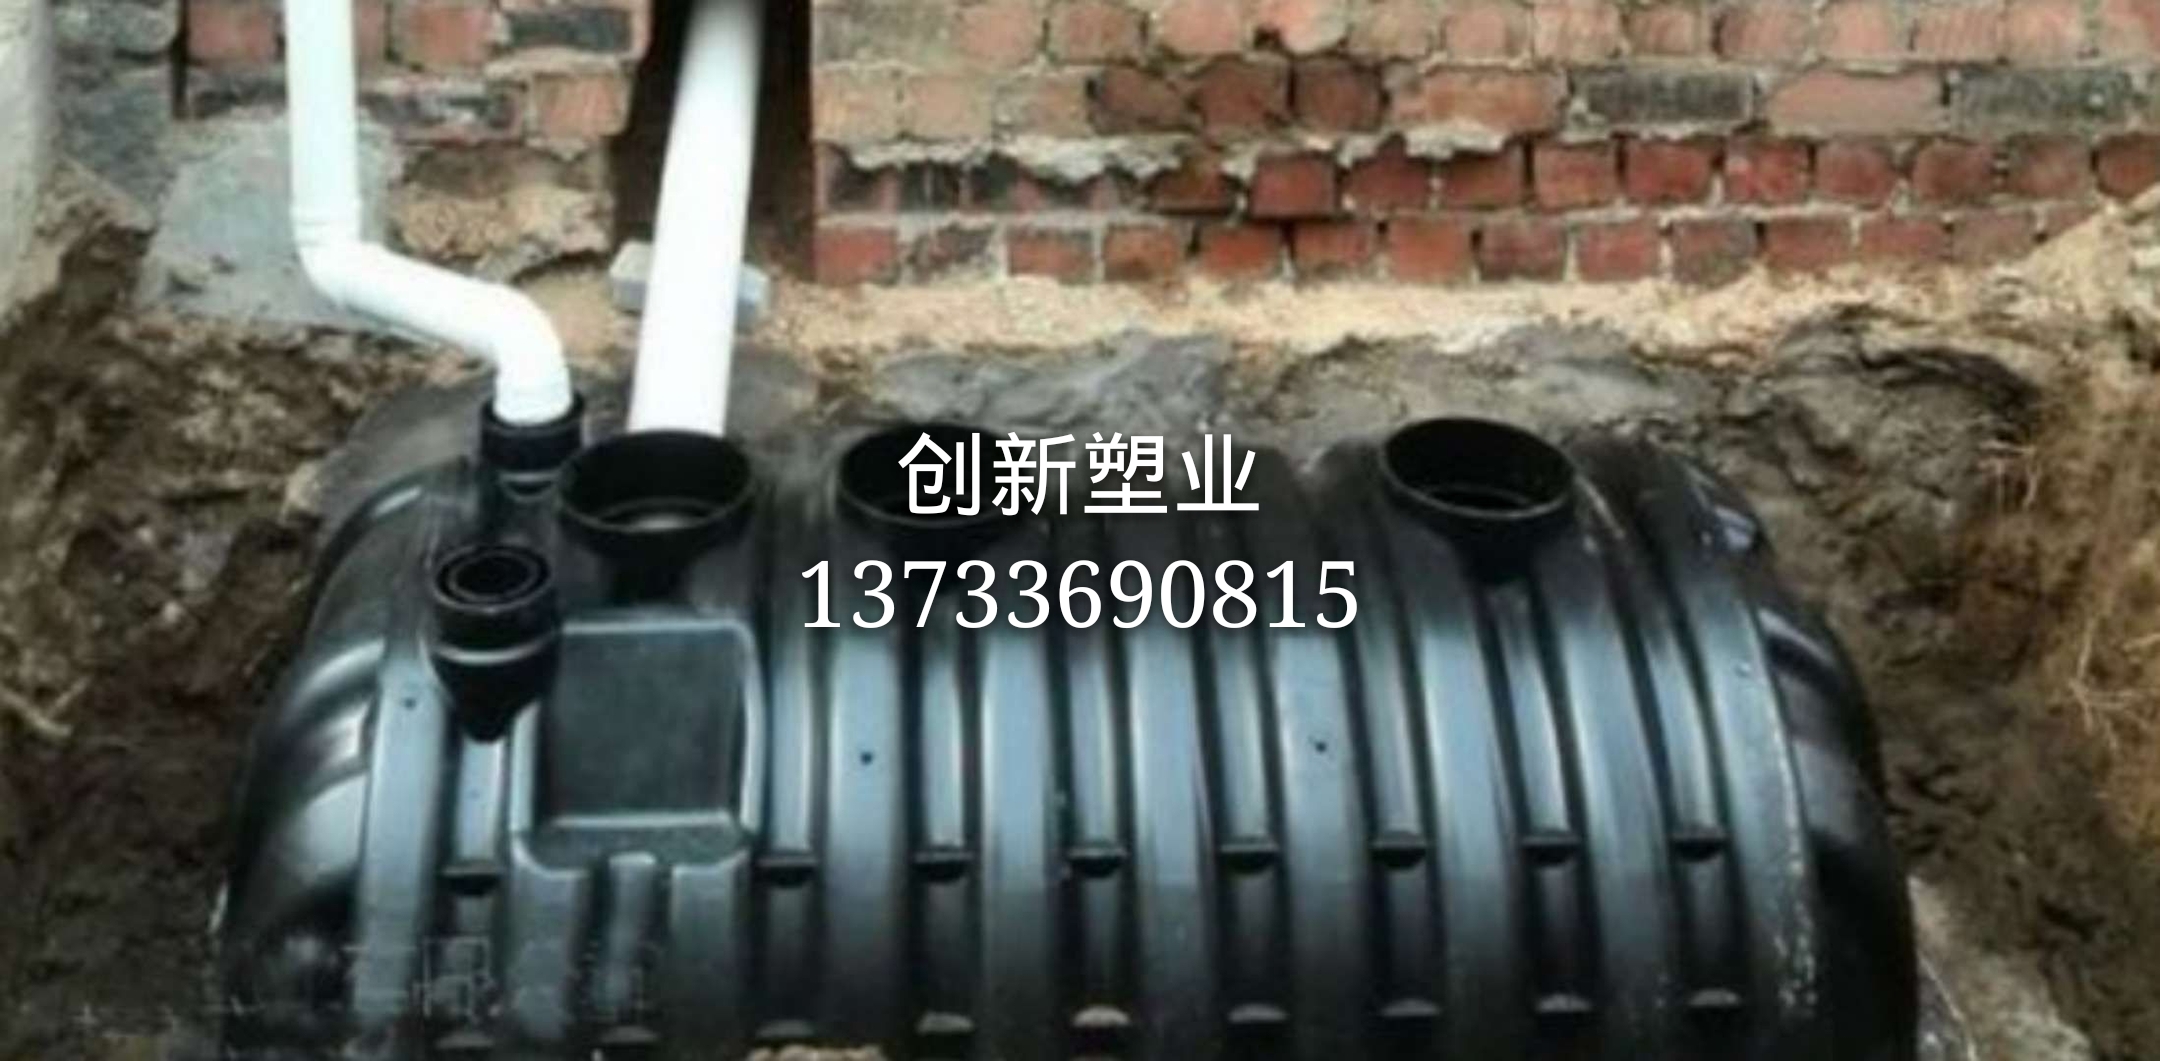 河南郑州平顶山塑料三格式化粪池厂 塑料一体三格化粪池 双瓮漏斗式粪池厂家价格